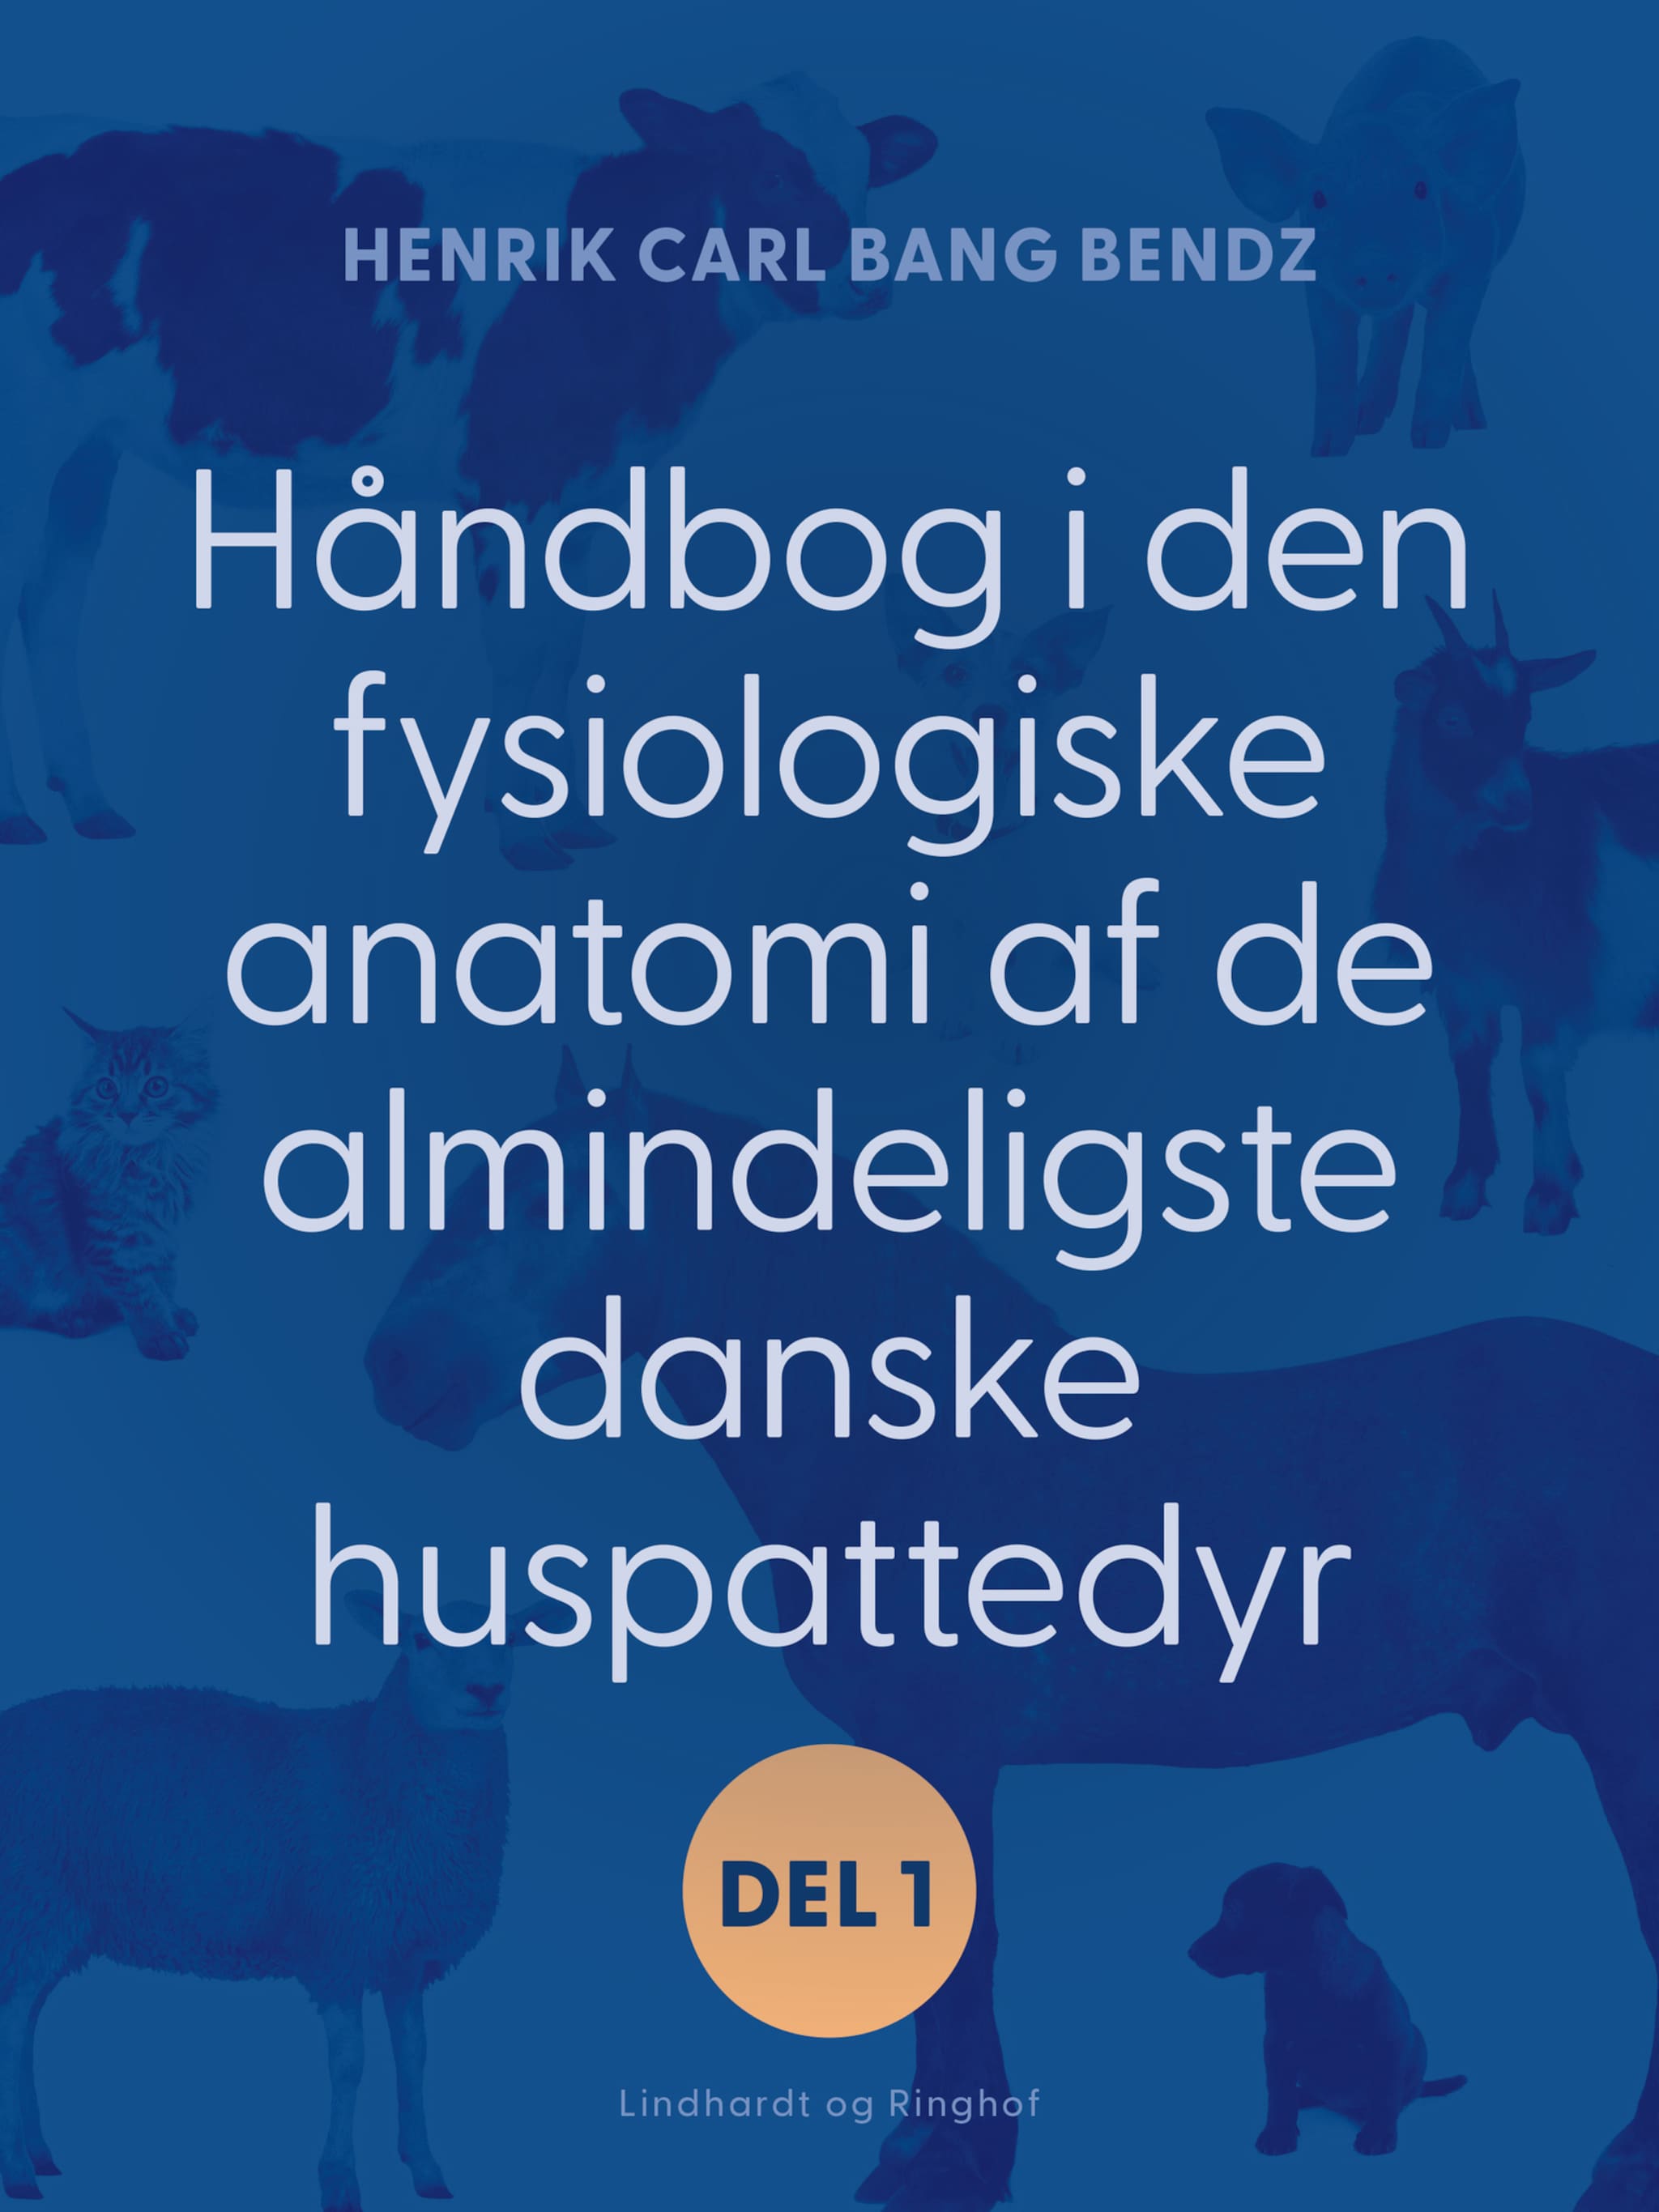 Håndbog i den fysiologiske anatomi af de almindeligste danske huspattedyr. Del 1 ilmaiseksi